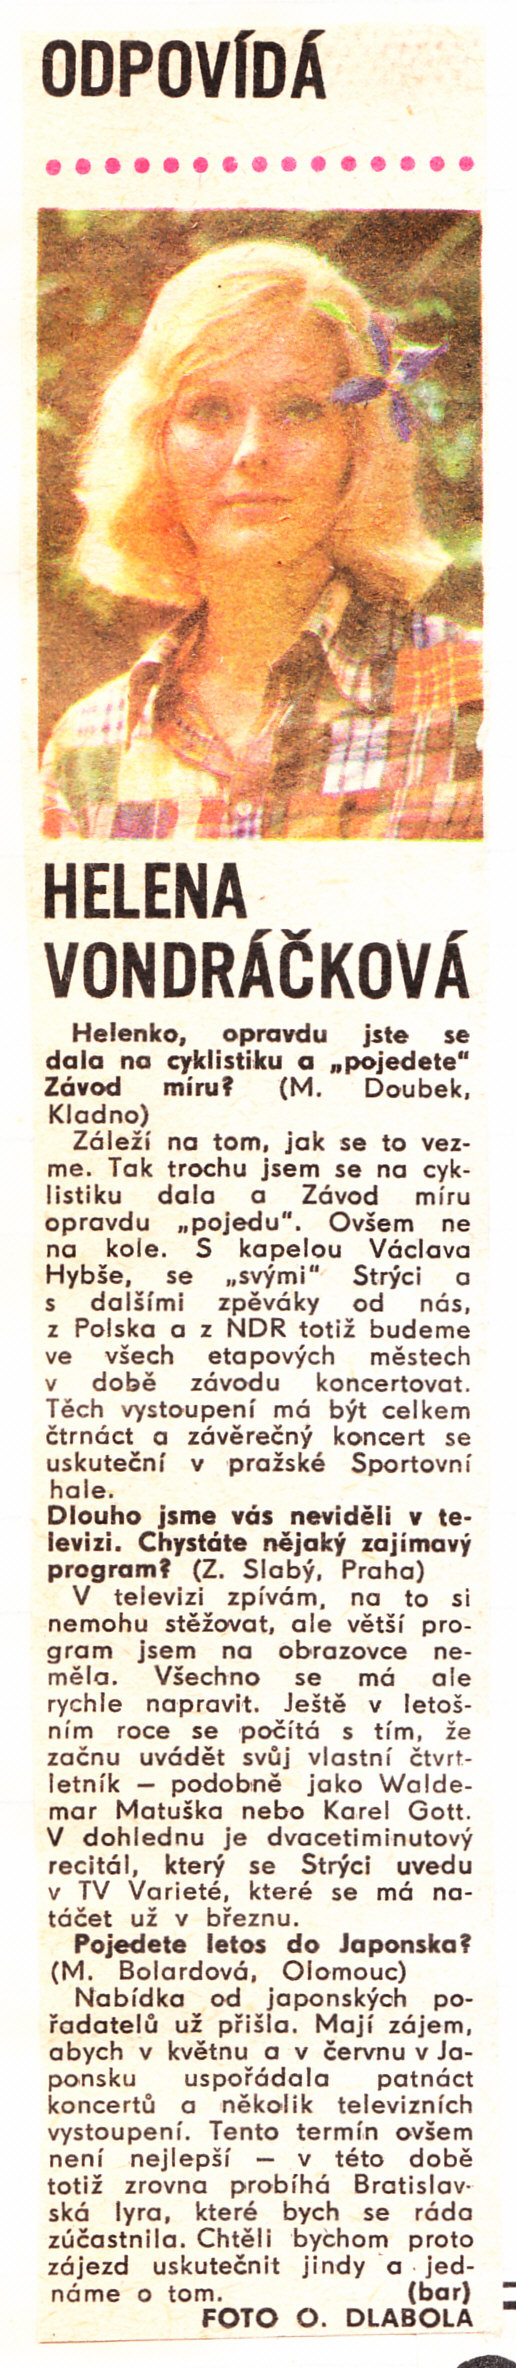 1974, Sedmička, květen.jpg